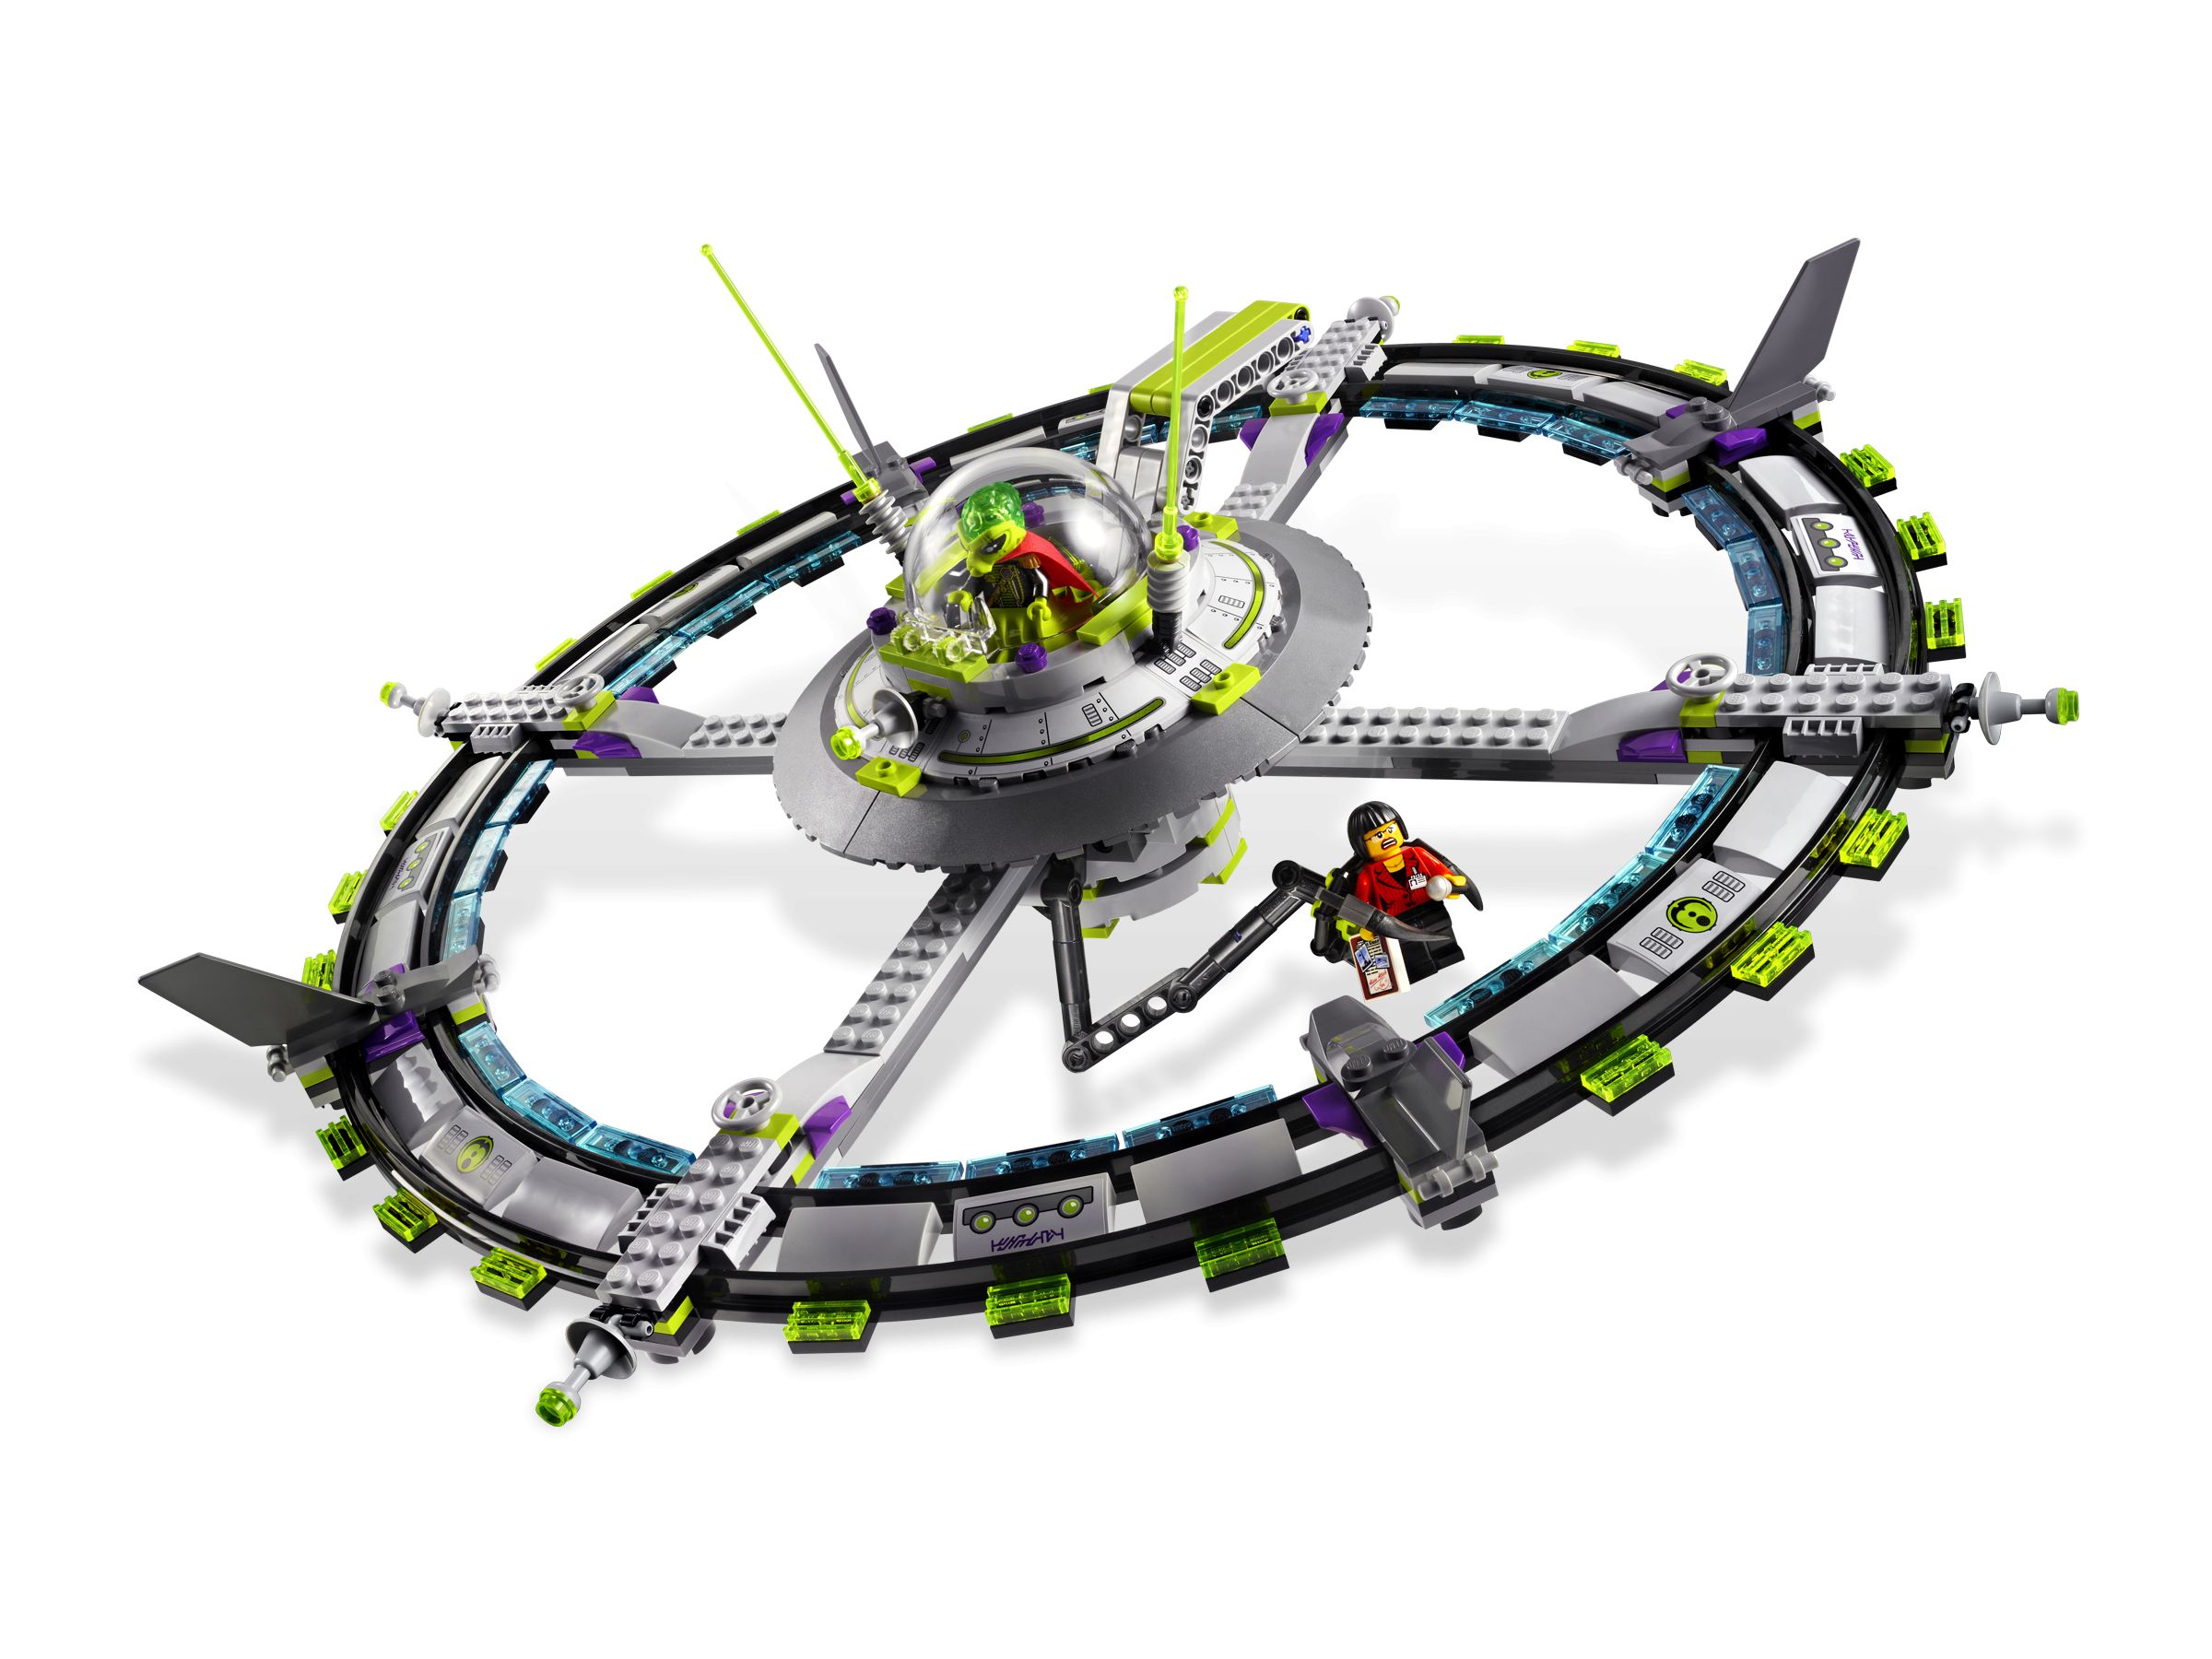 LEGO Space 7065 Großes Alien-Raumschiff LEGO_7065_alt2.jpg